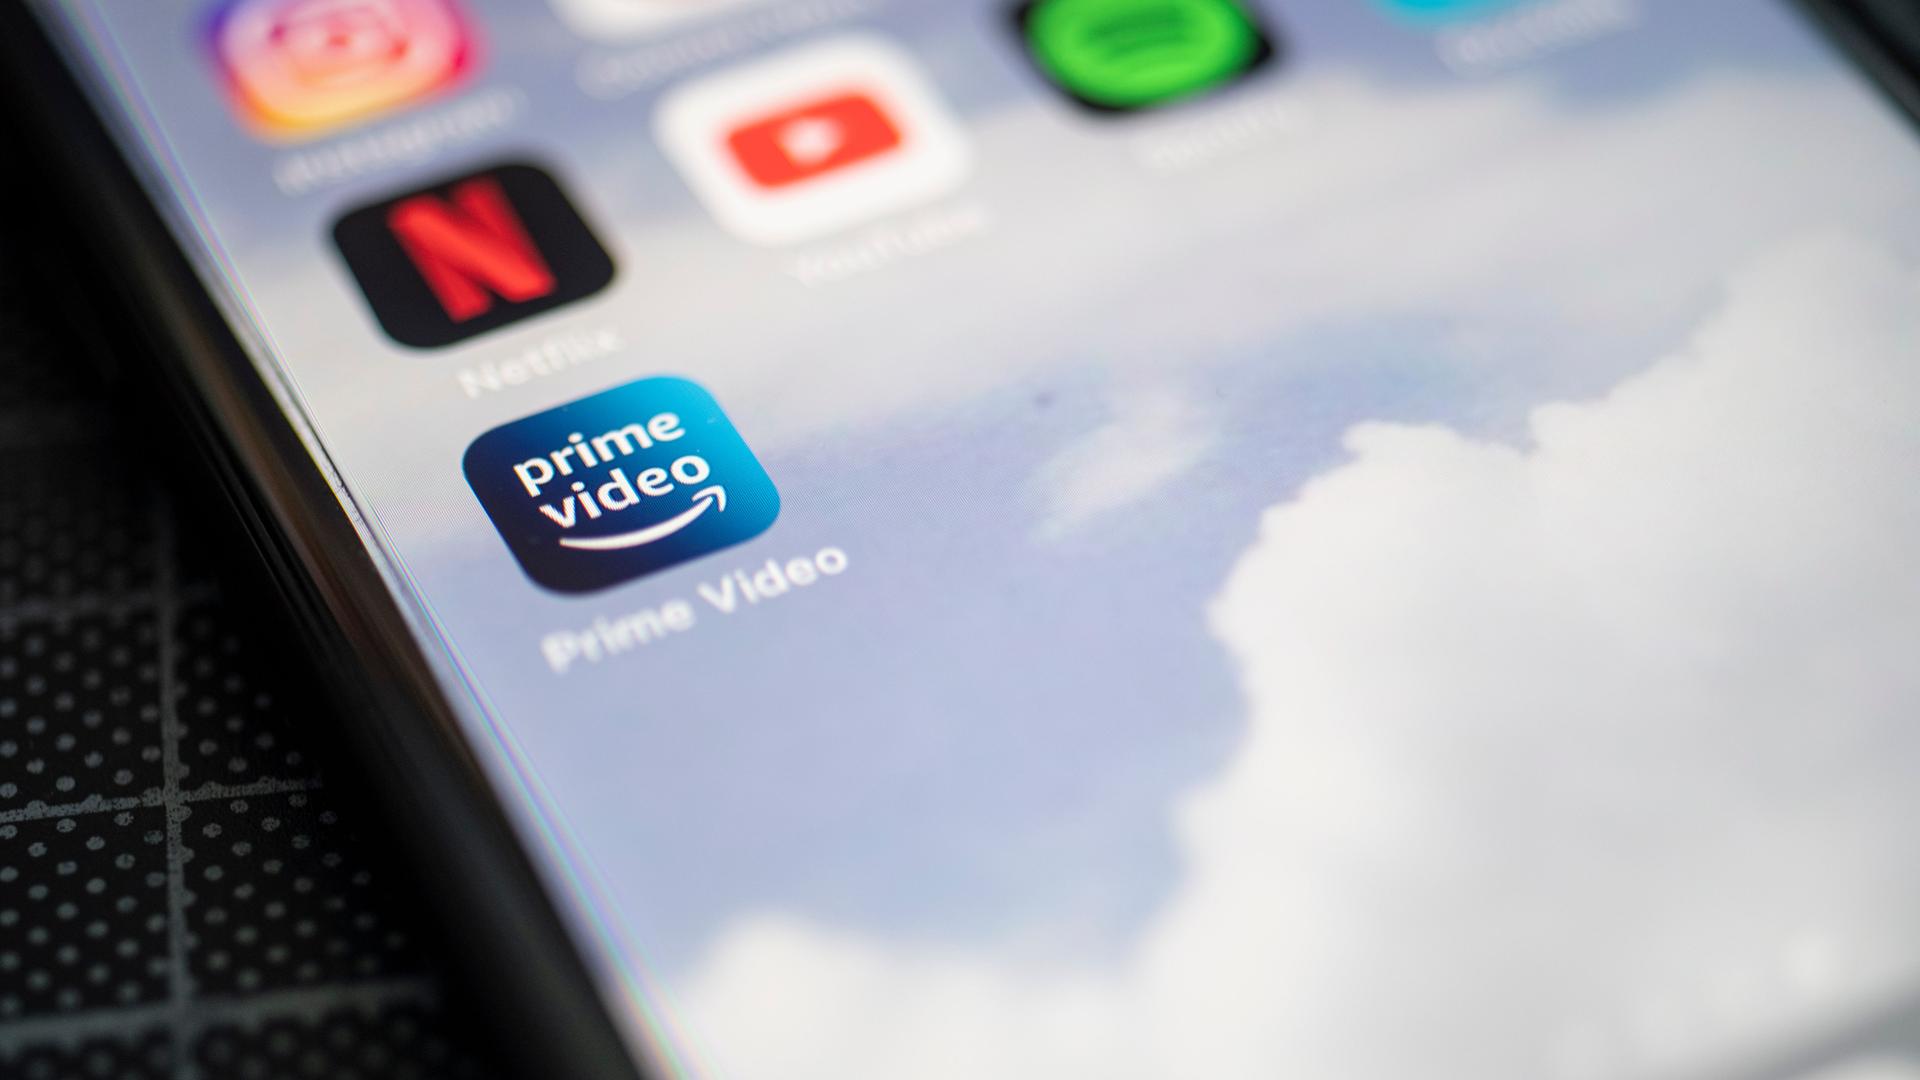 Auf dem Bildschirm eines Smartphones sieht man das Logo der App Prime Video.